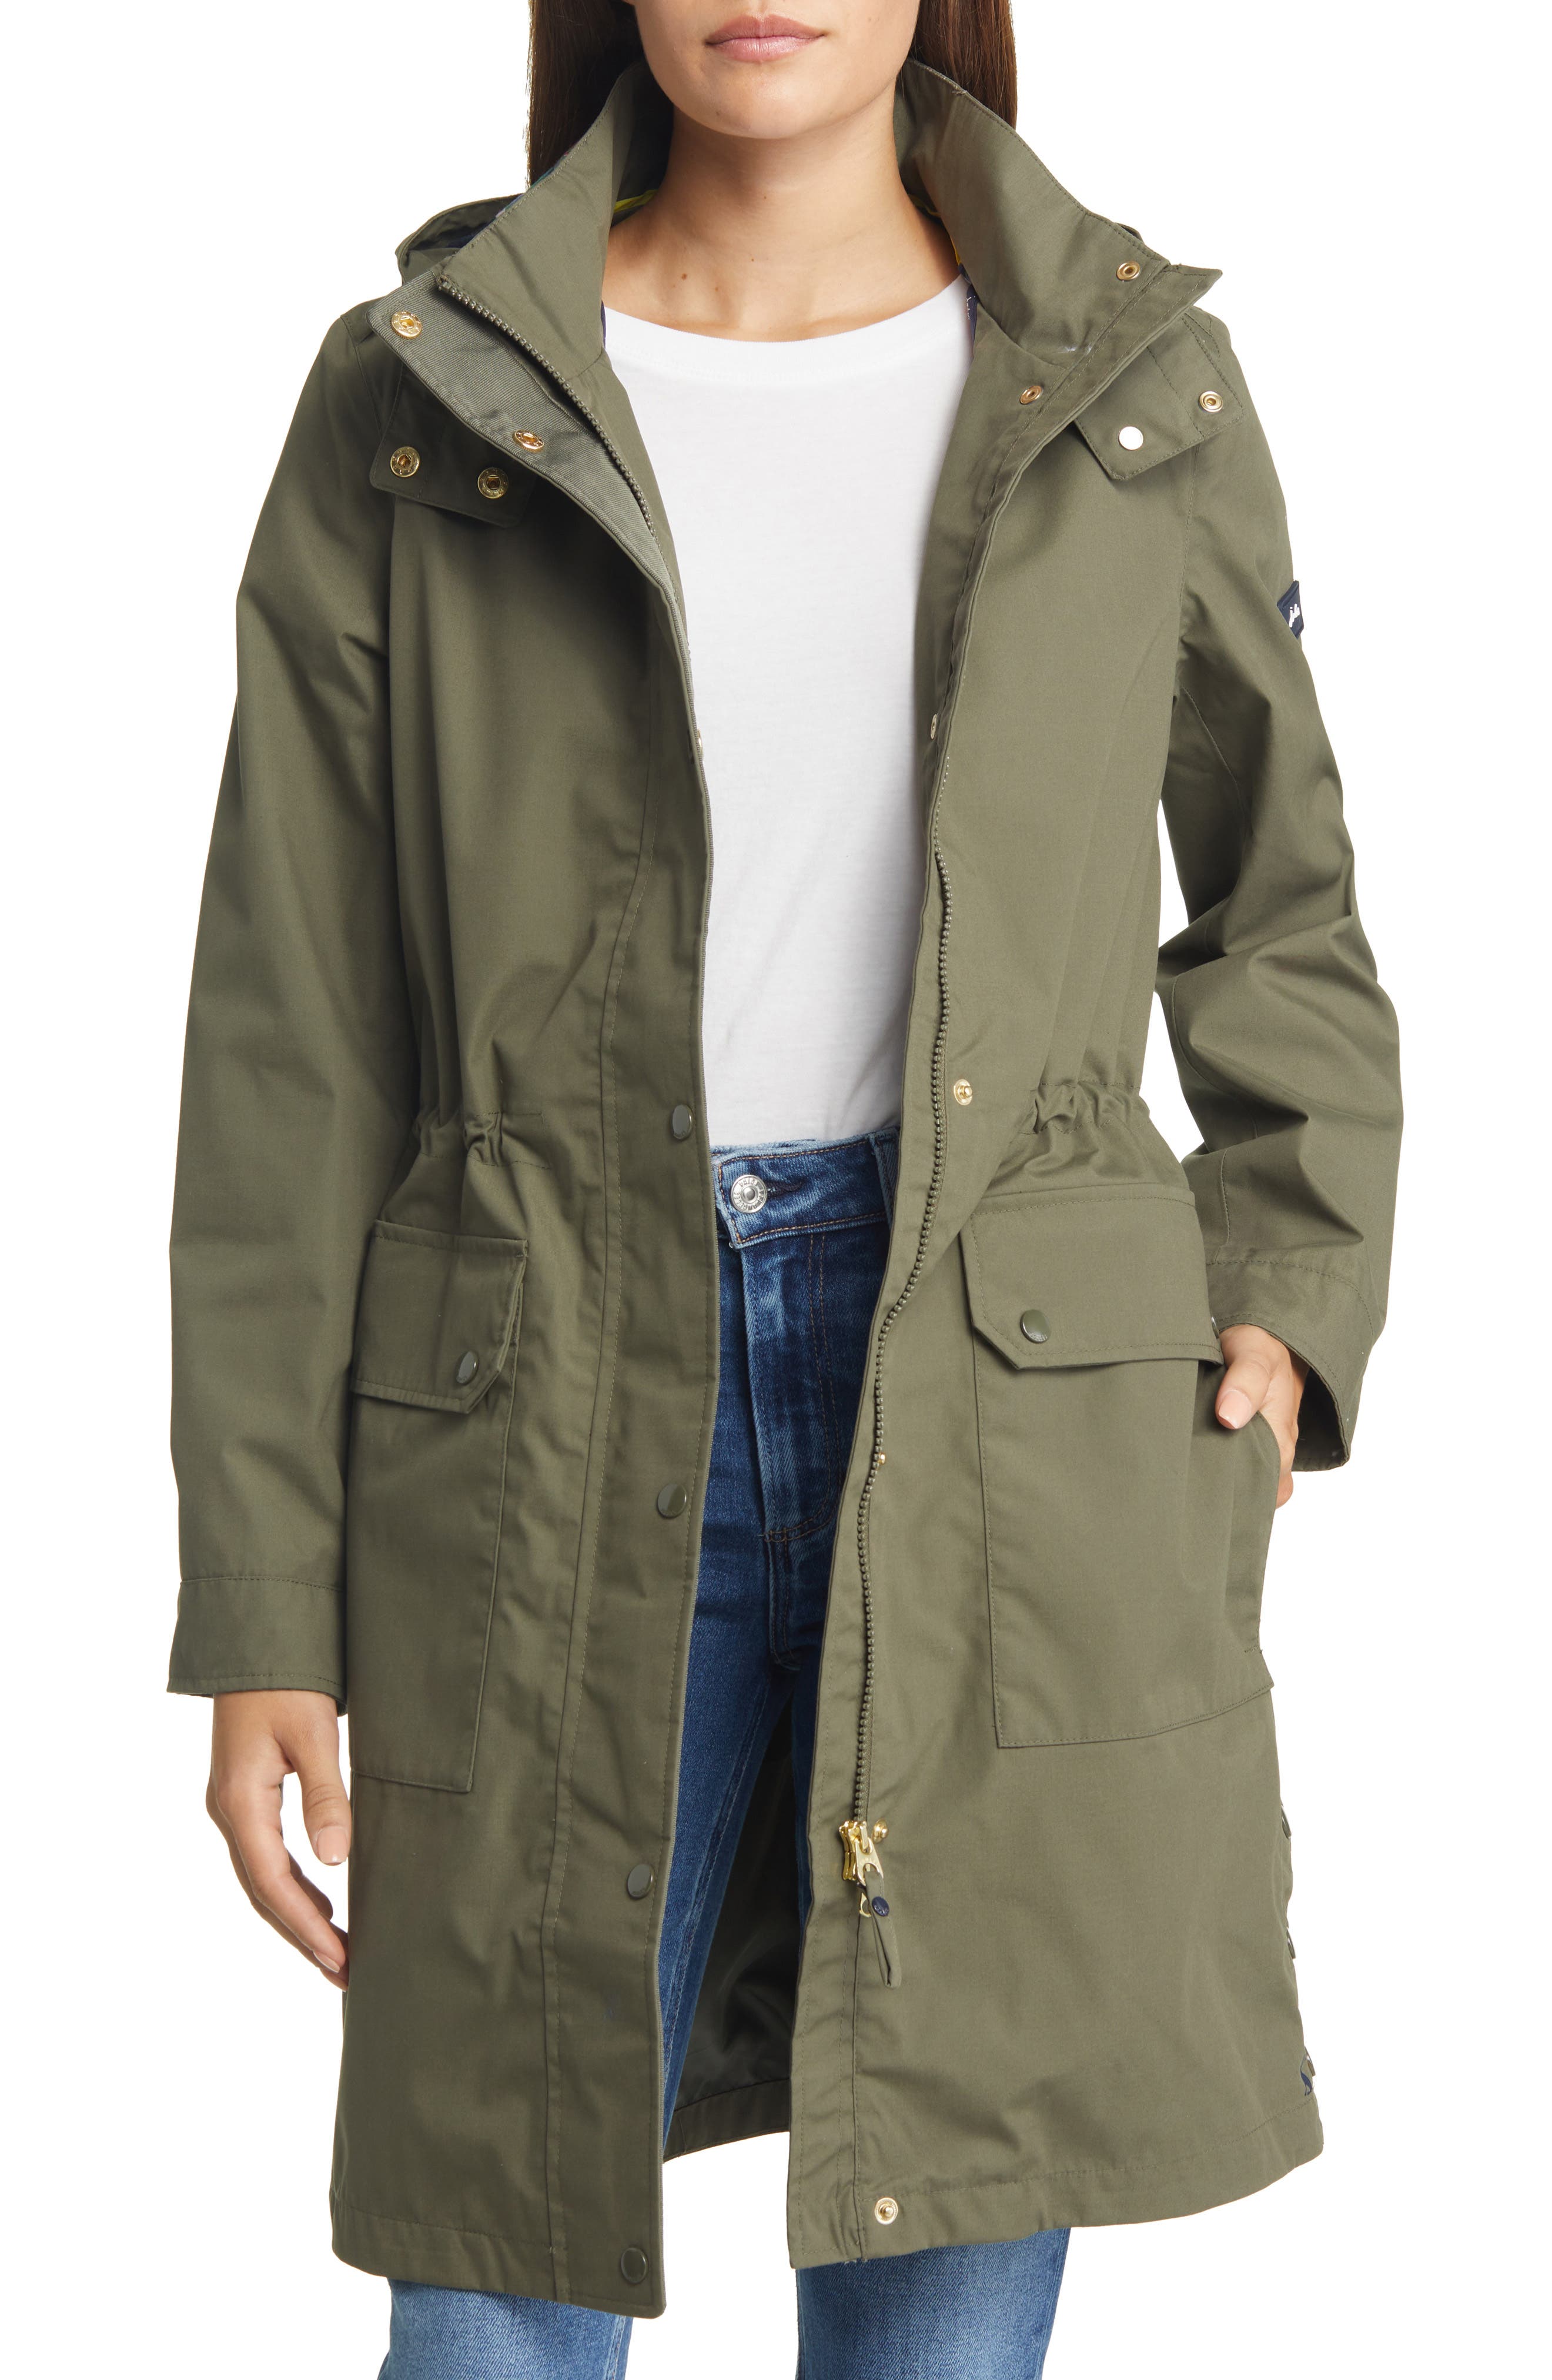 Jack Murphy Paloma Jacket Waterproof Coat with Faux Fur Hood Brown or Navy 